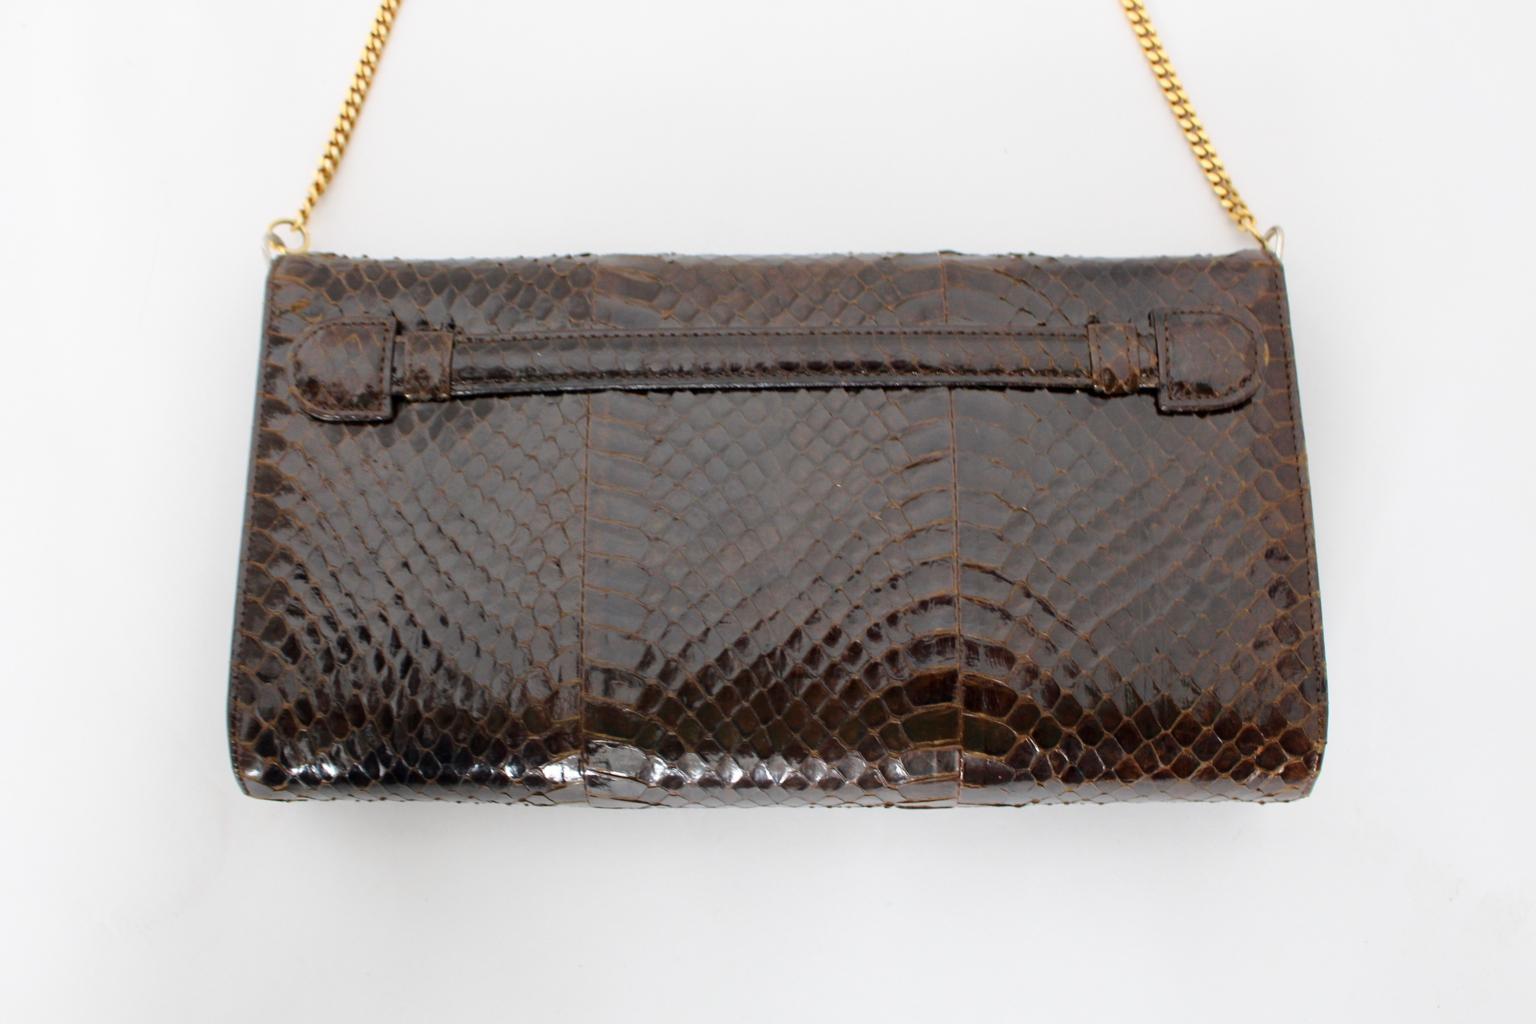 Women's Vintage Snake Skin Clutch or Handbag Brown and Gold France 1970s For Sale